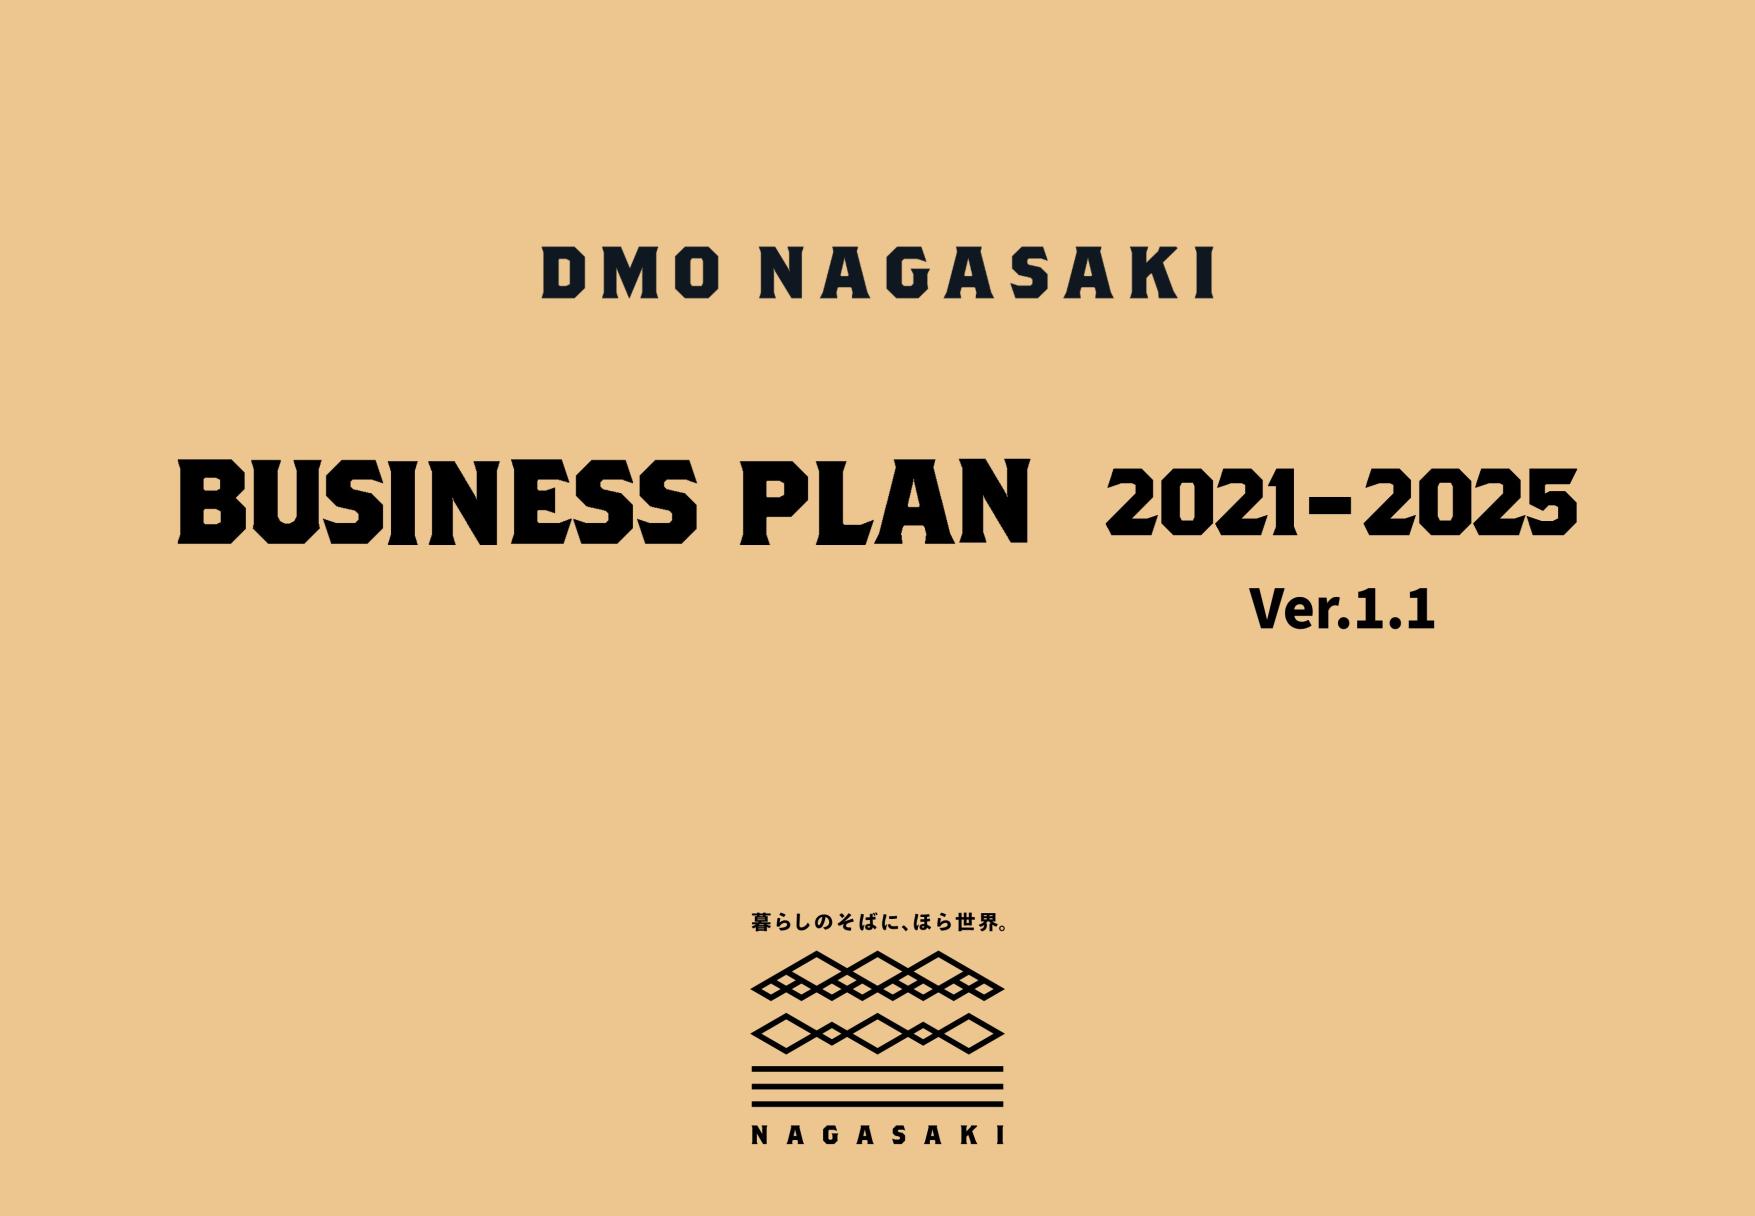 https://www.at-nagasaki.jp/dmo/plan/MTP21-25_v1.1